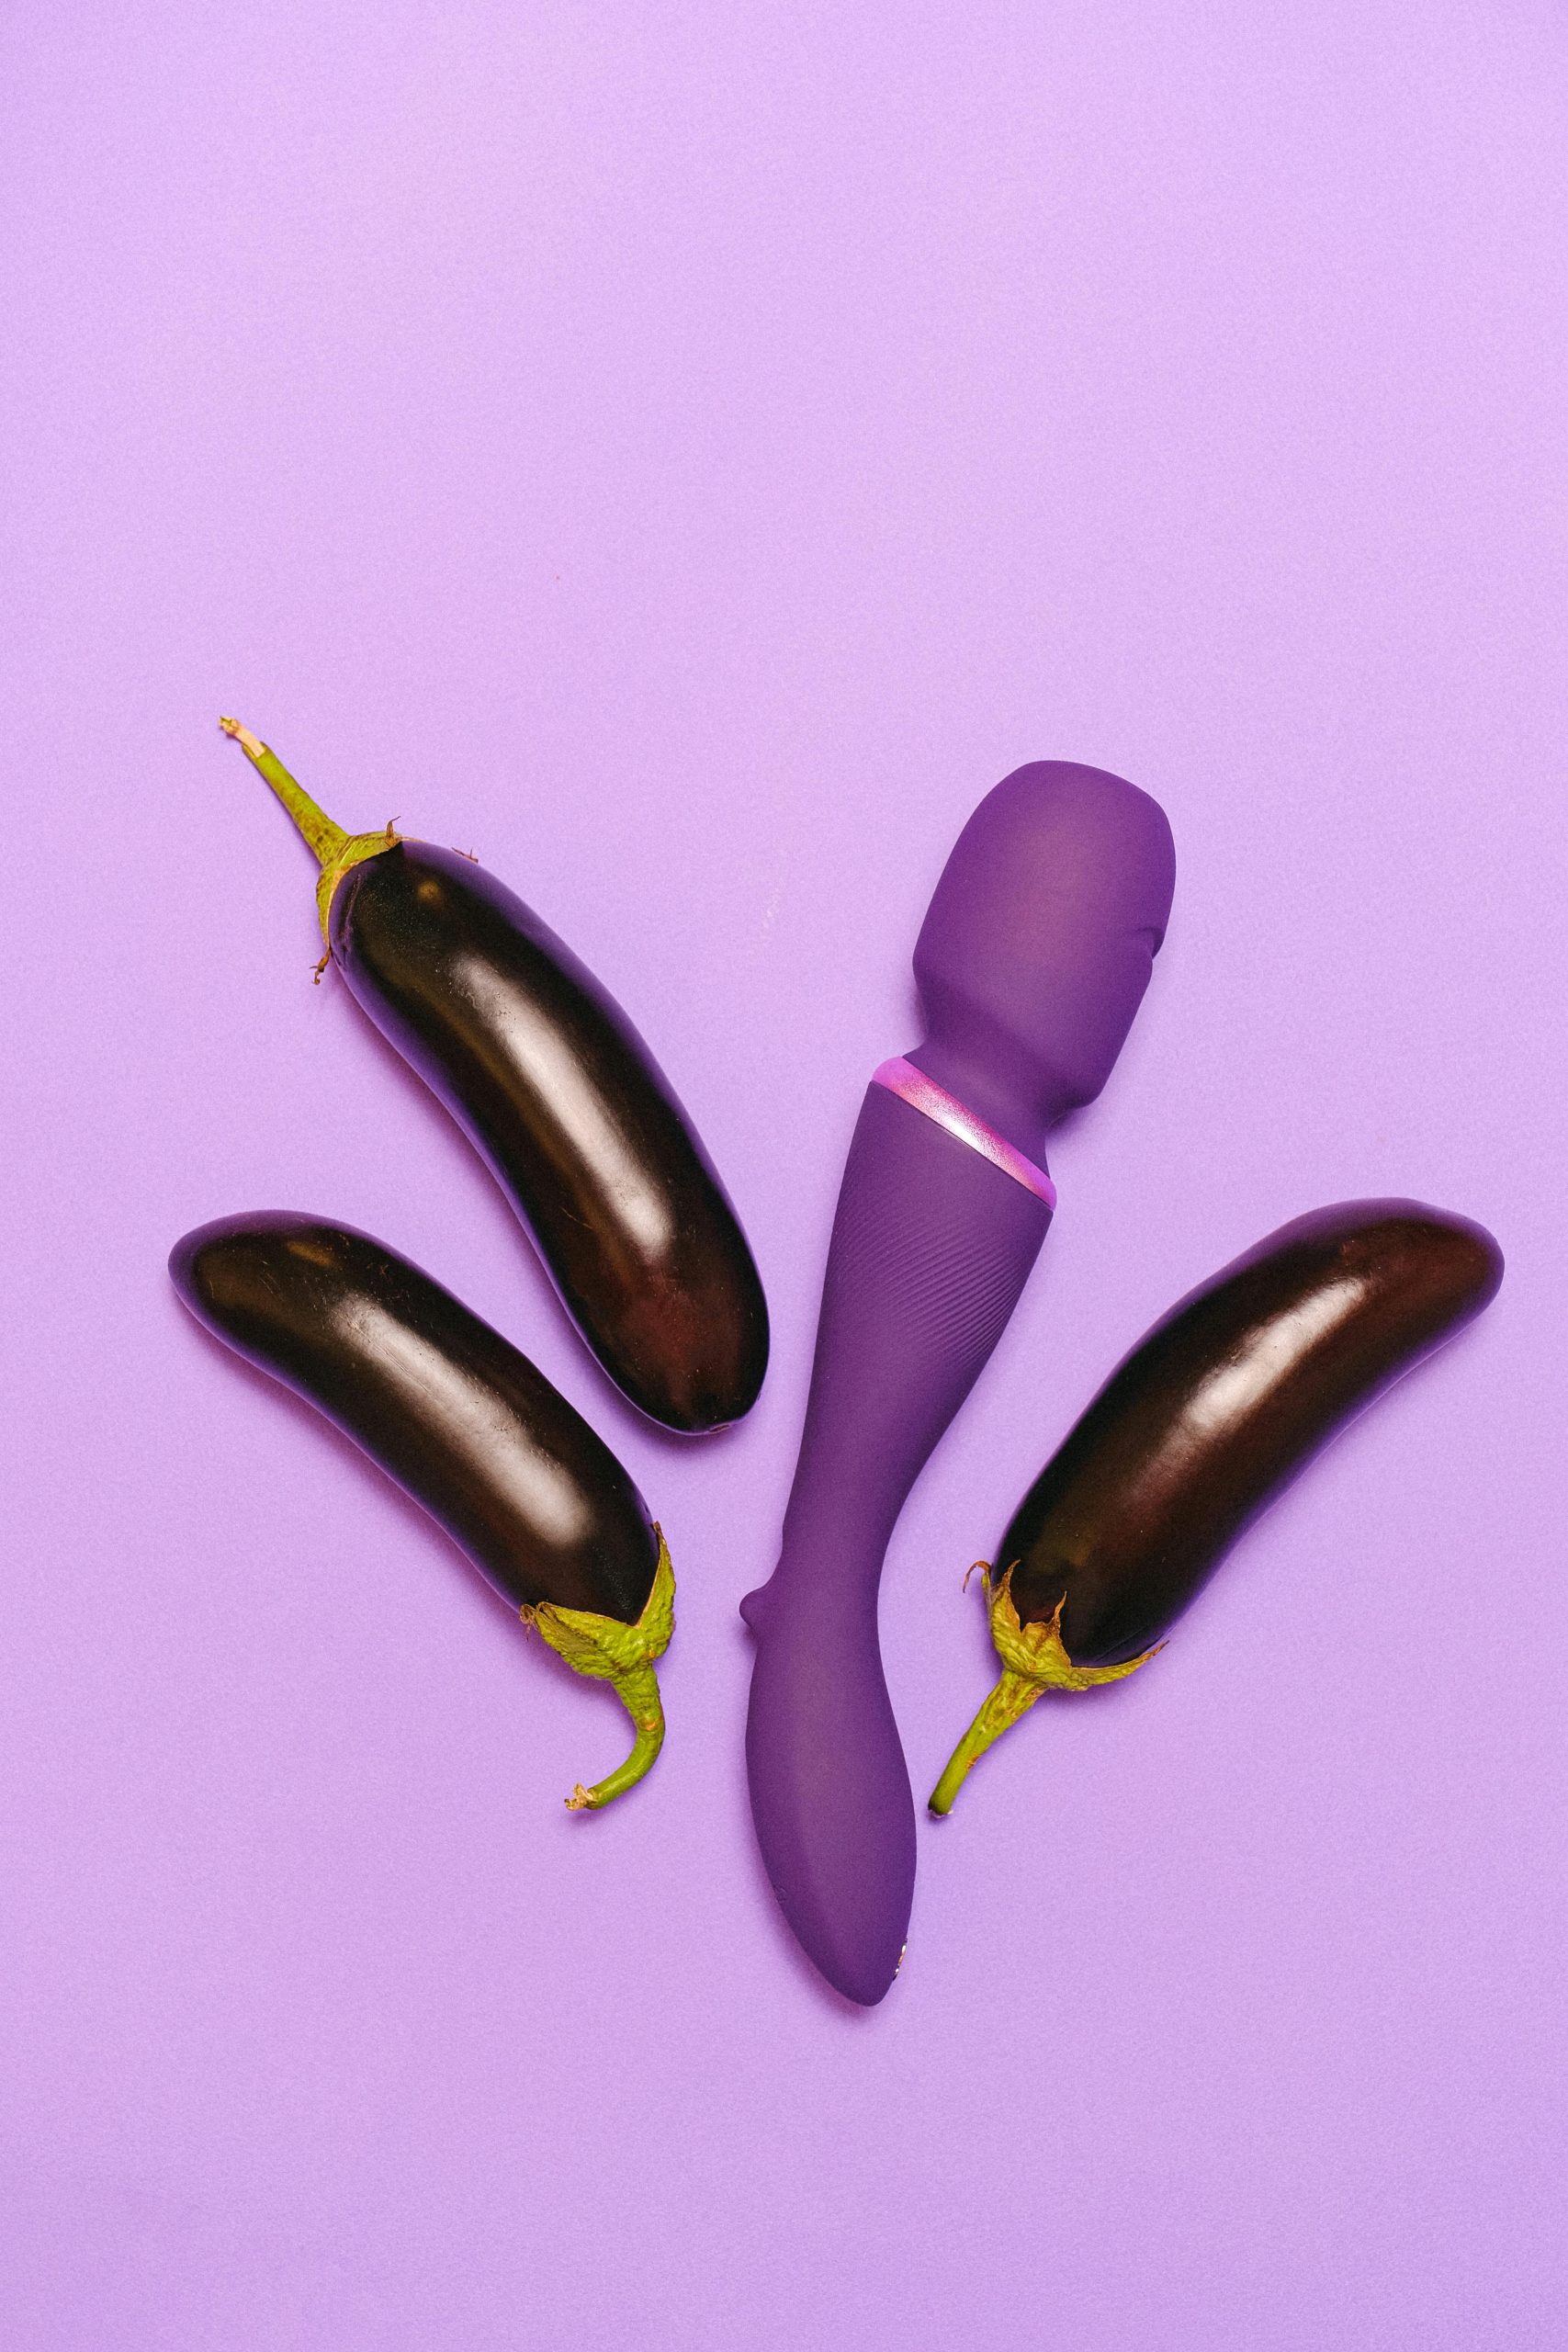 wand vibrator with eggplants